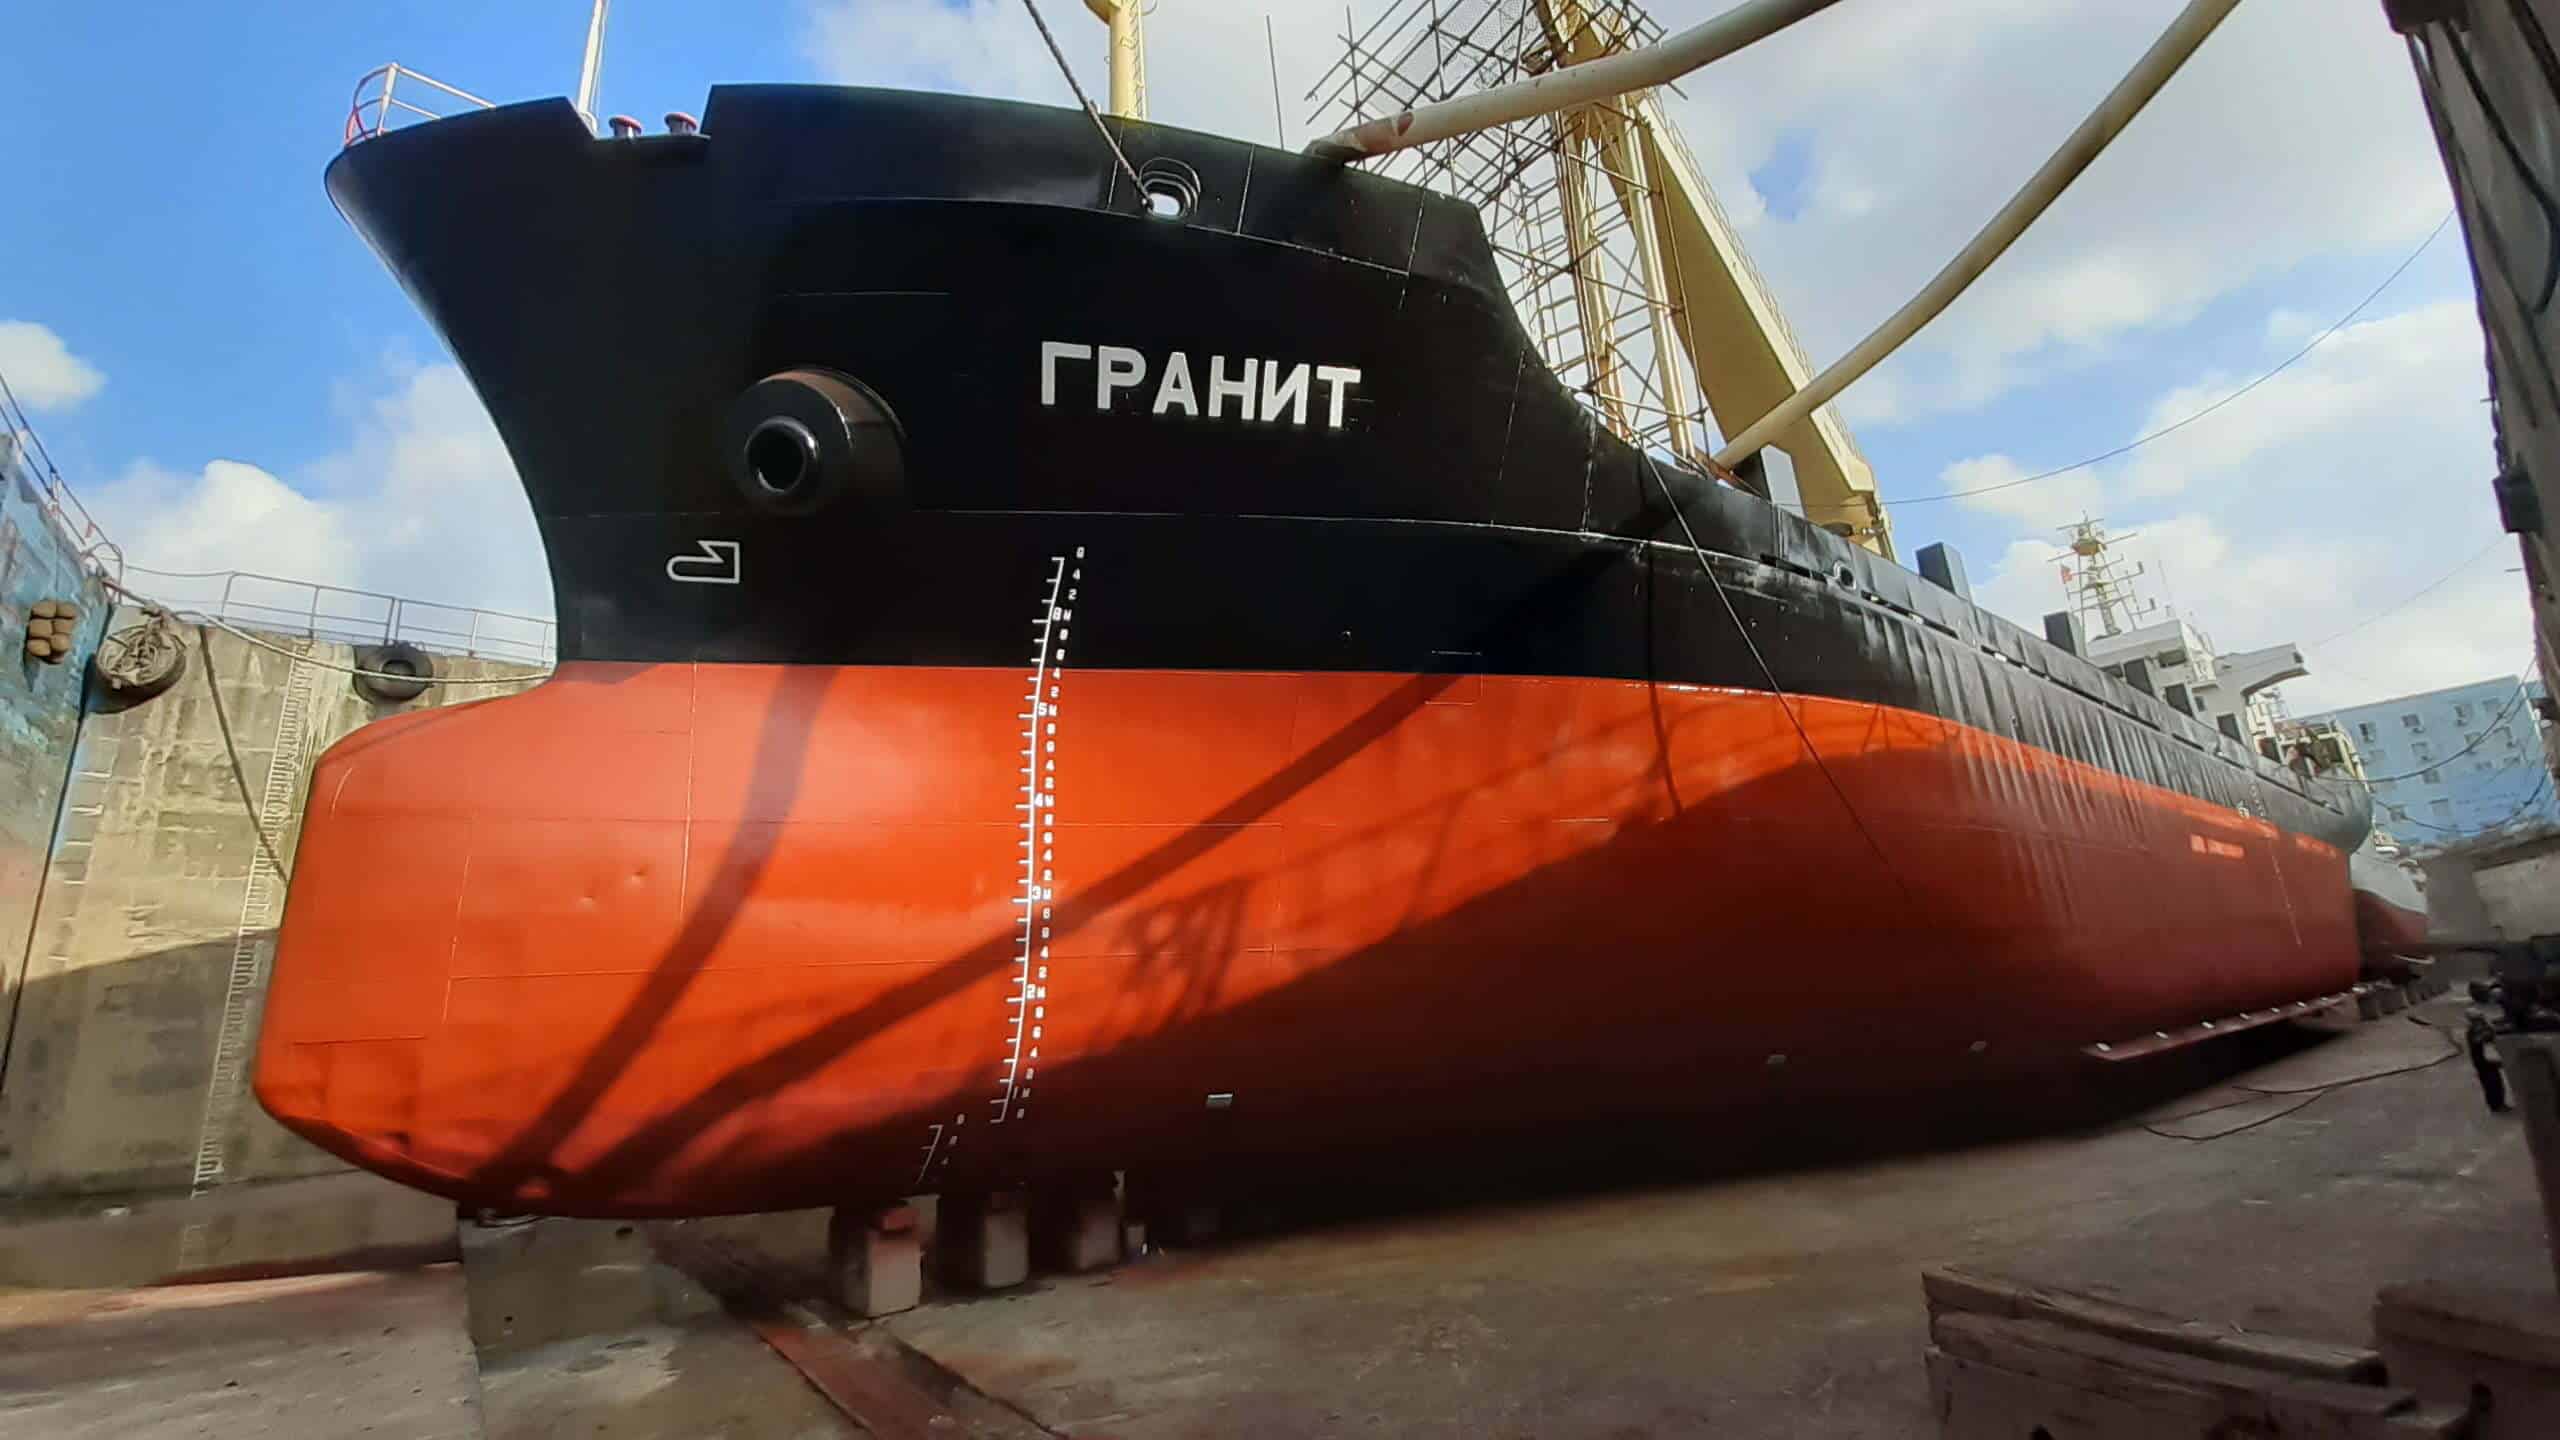 Доковый ремонт судна "Гранит"